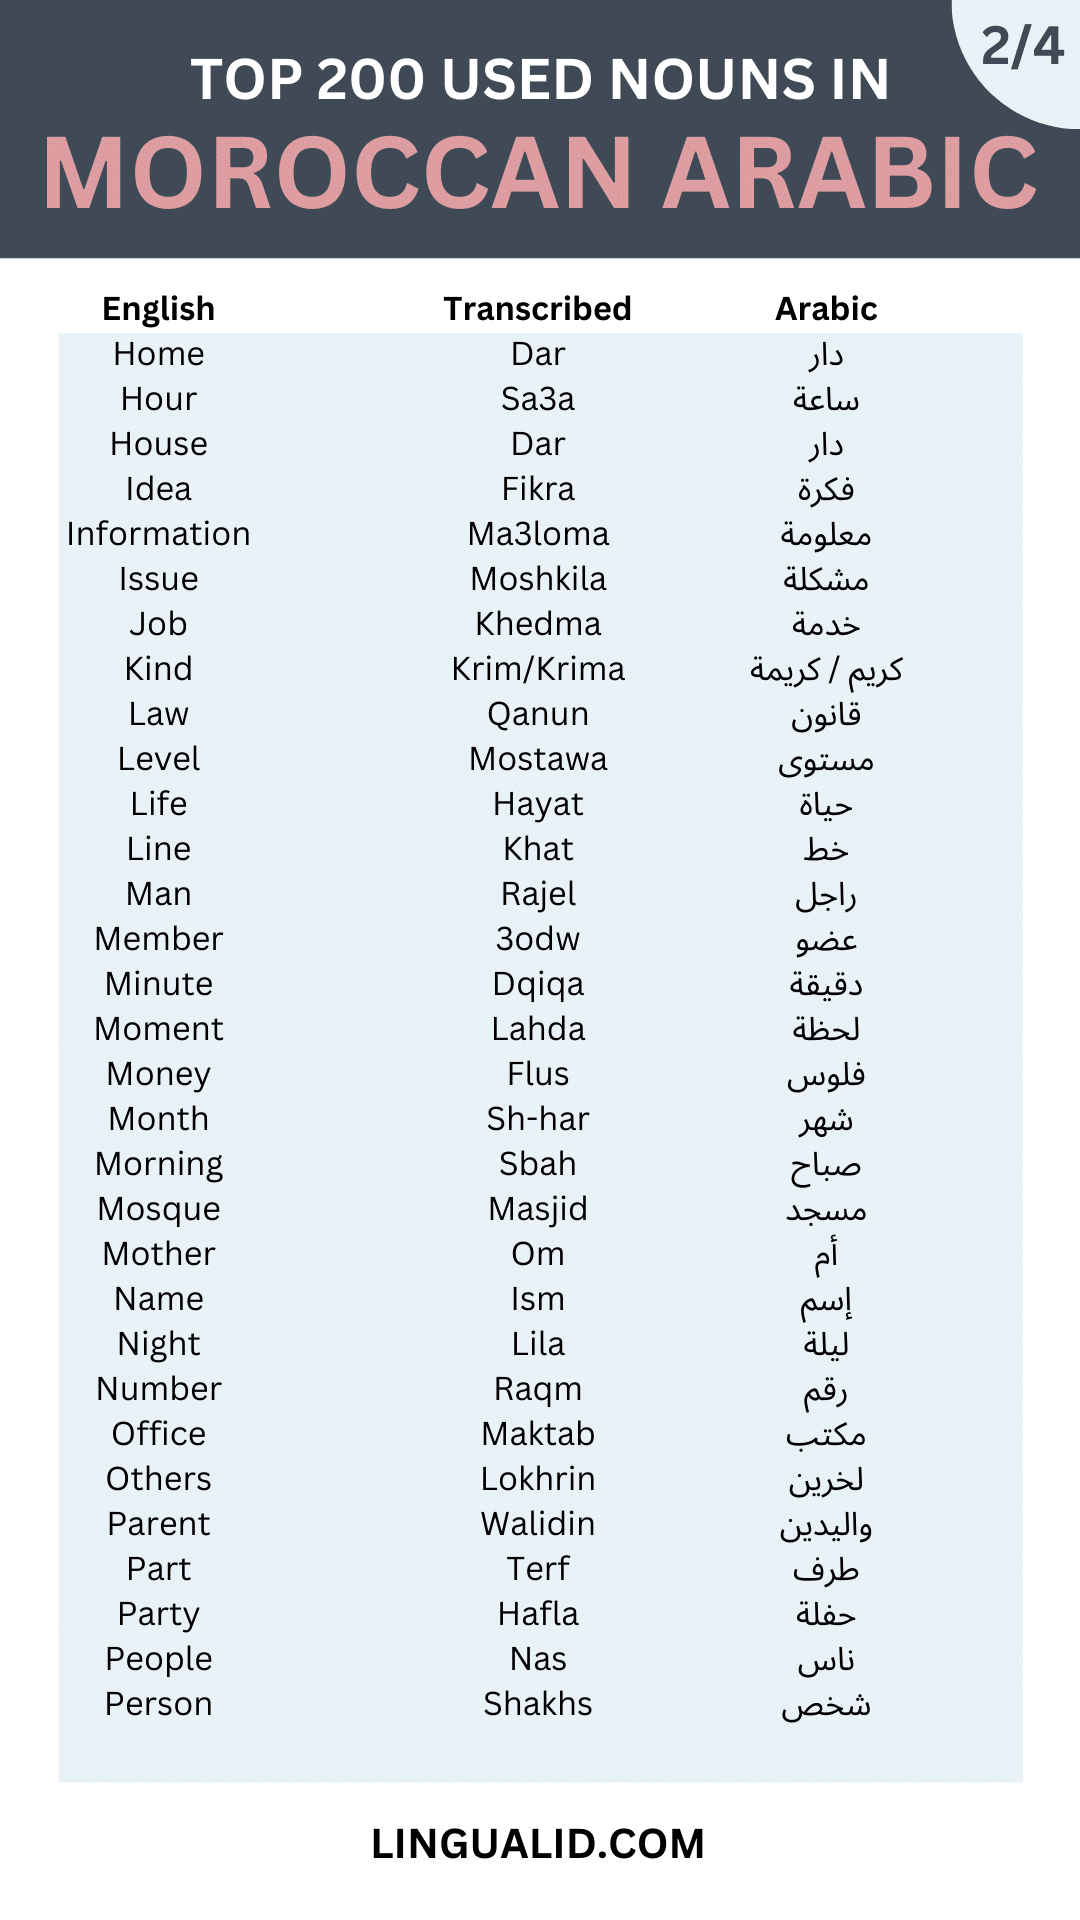 TOP 200 common nouns IN MOROCCAN ARABIC 2